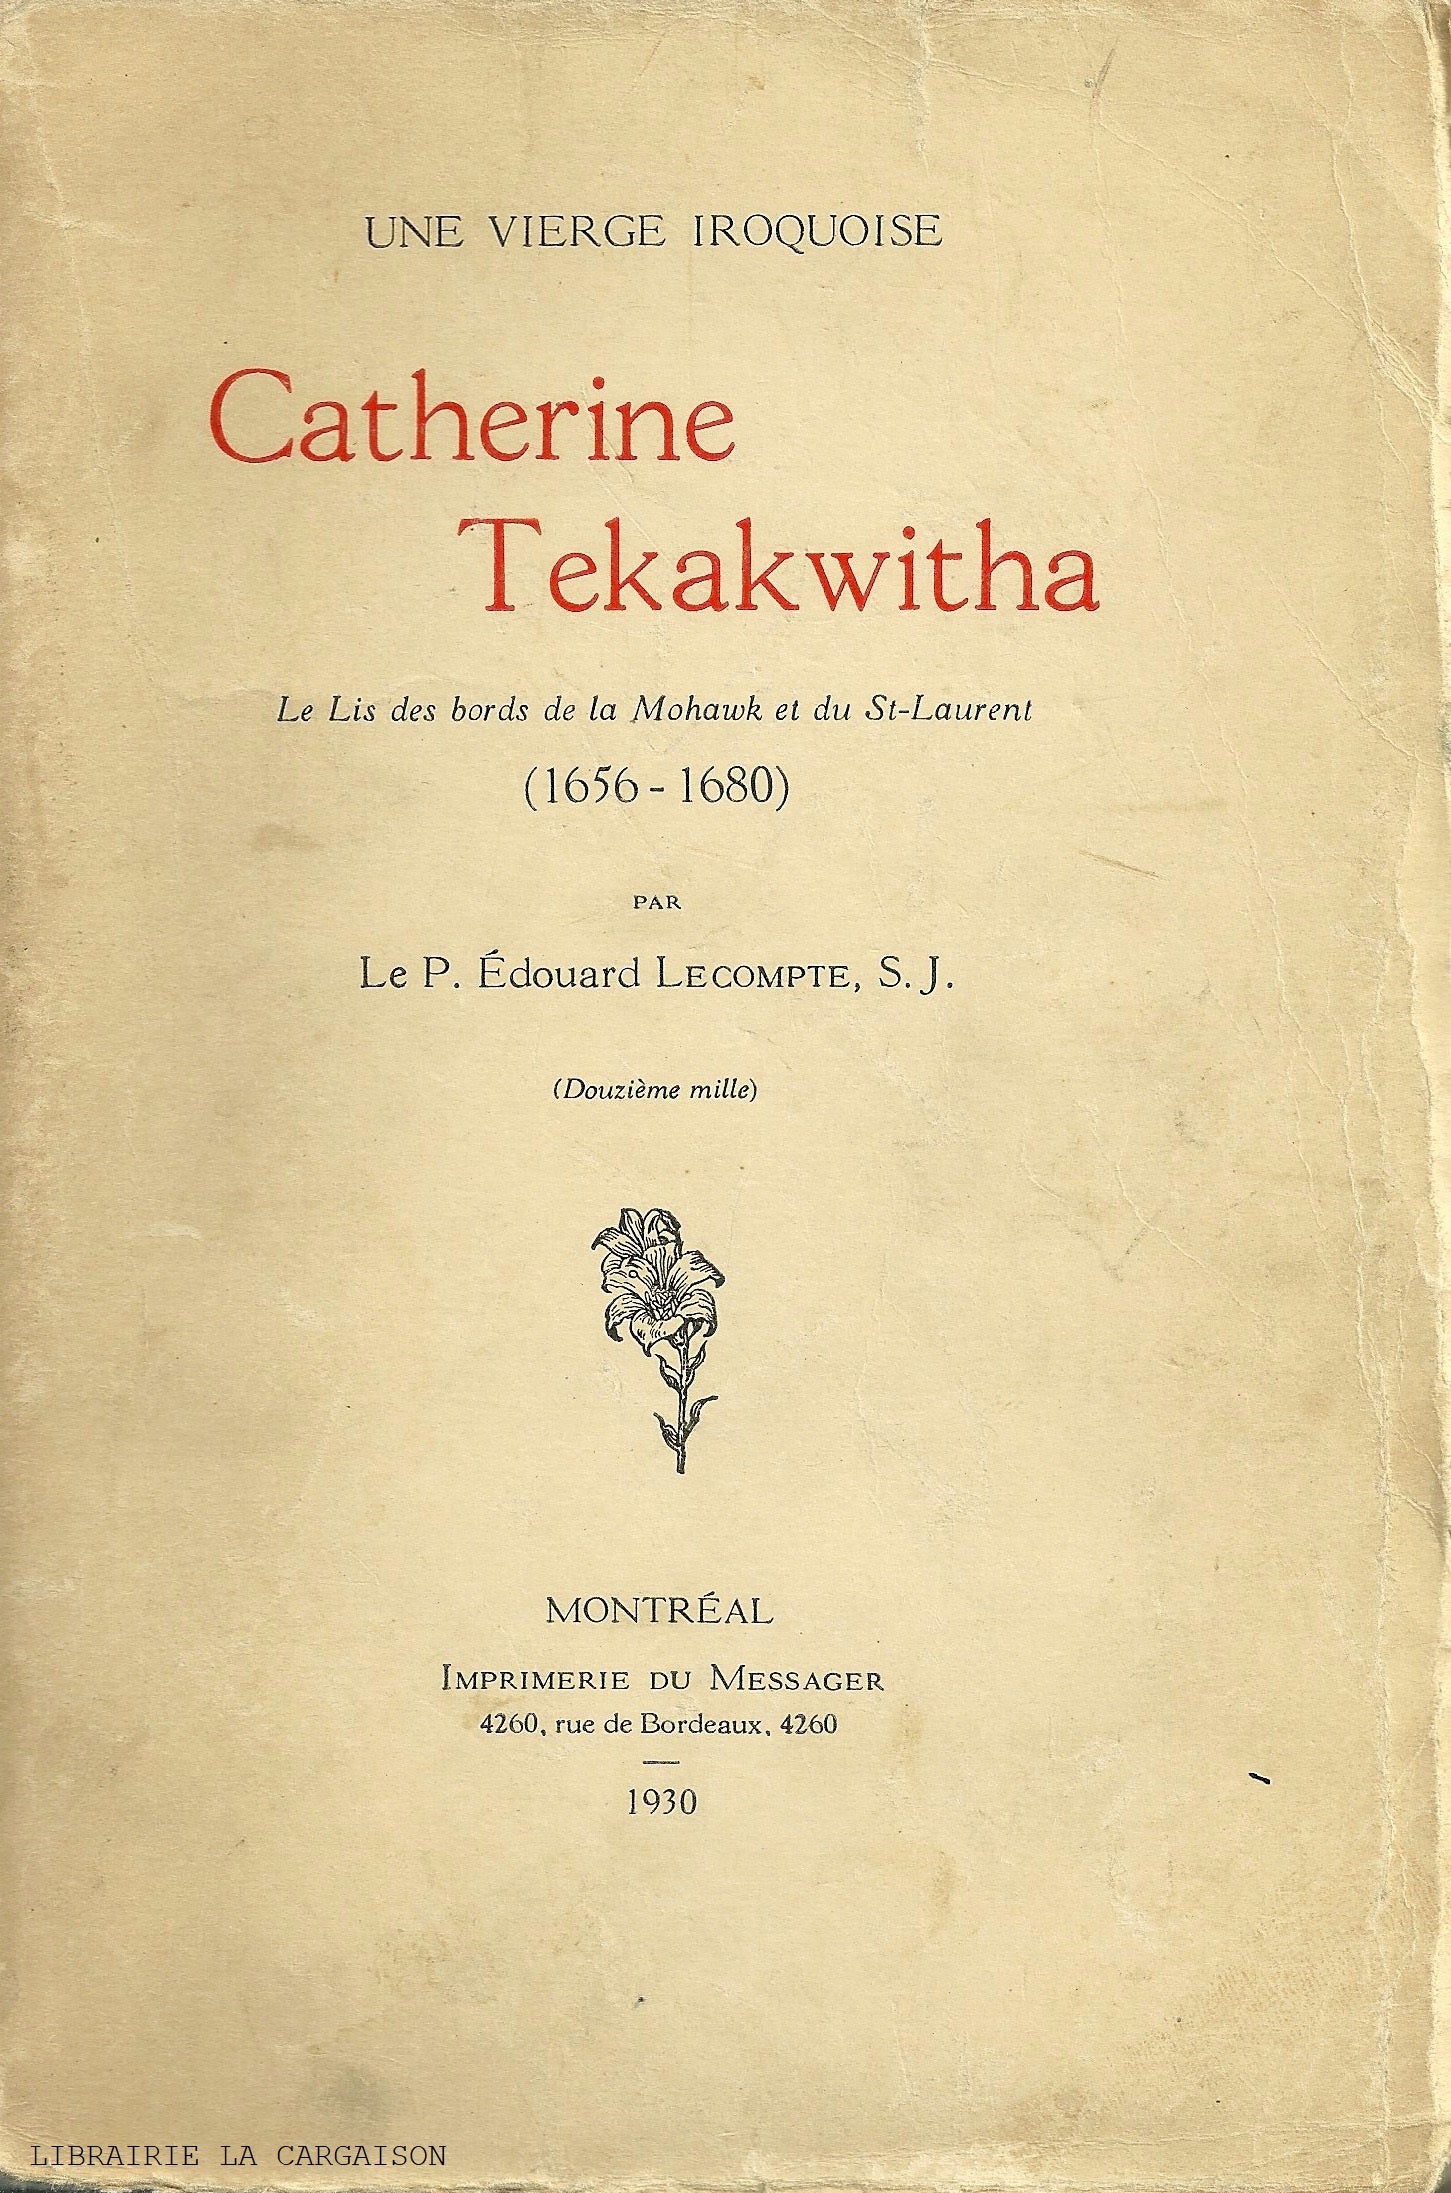 TEKAKWITHA, CATHERINE. Une vierge iroquoise - Catherine Tekakwitha : Le Lis des bords de la Mohawk et du St-Laurent (1656-1680)